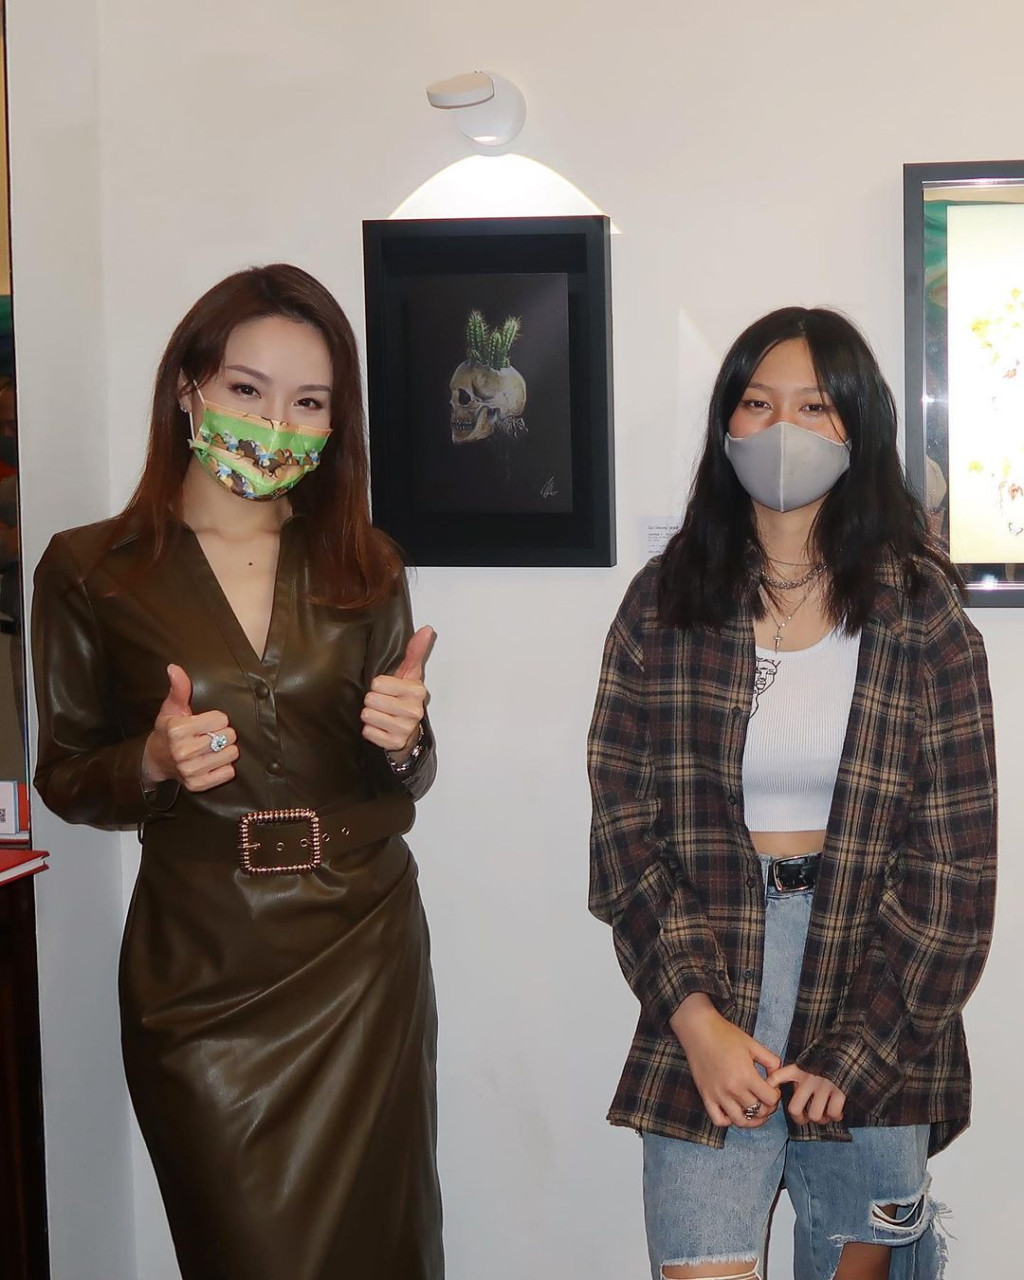 有內地媒體報道指，相中穿格仔恤衫戴口罩的女子(右)是張學友女兒張瑤萱。